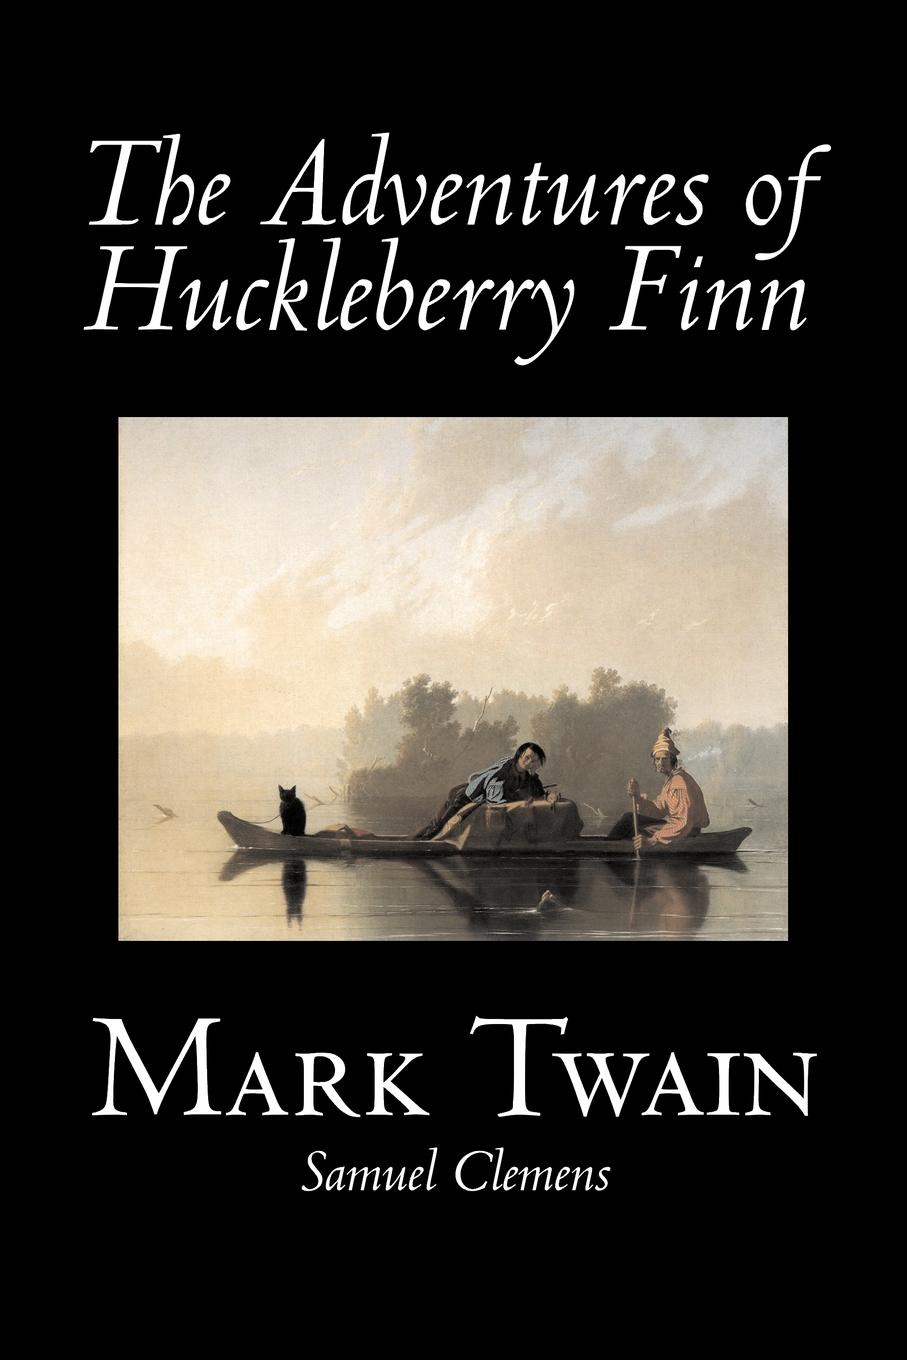 The adventures of huckleberry finn mark twain. The Adventures of Huckleberry Finn by Mark Twain.